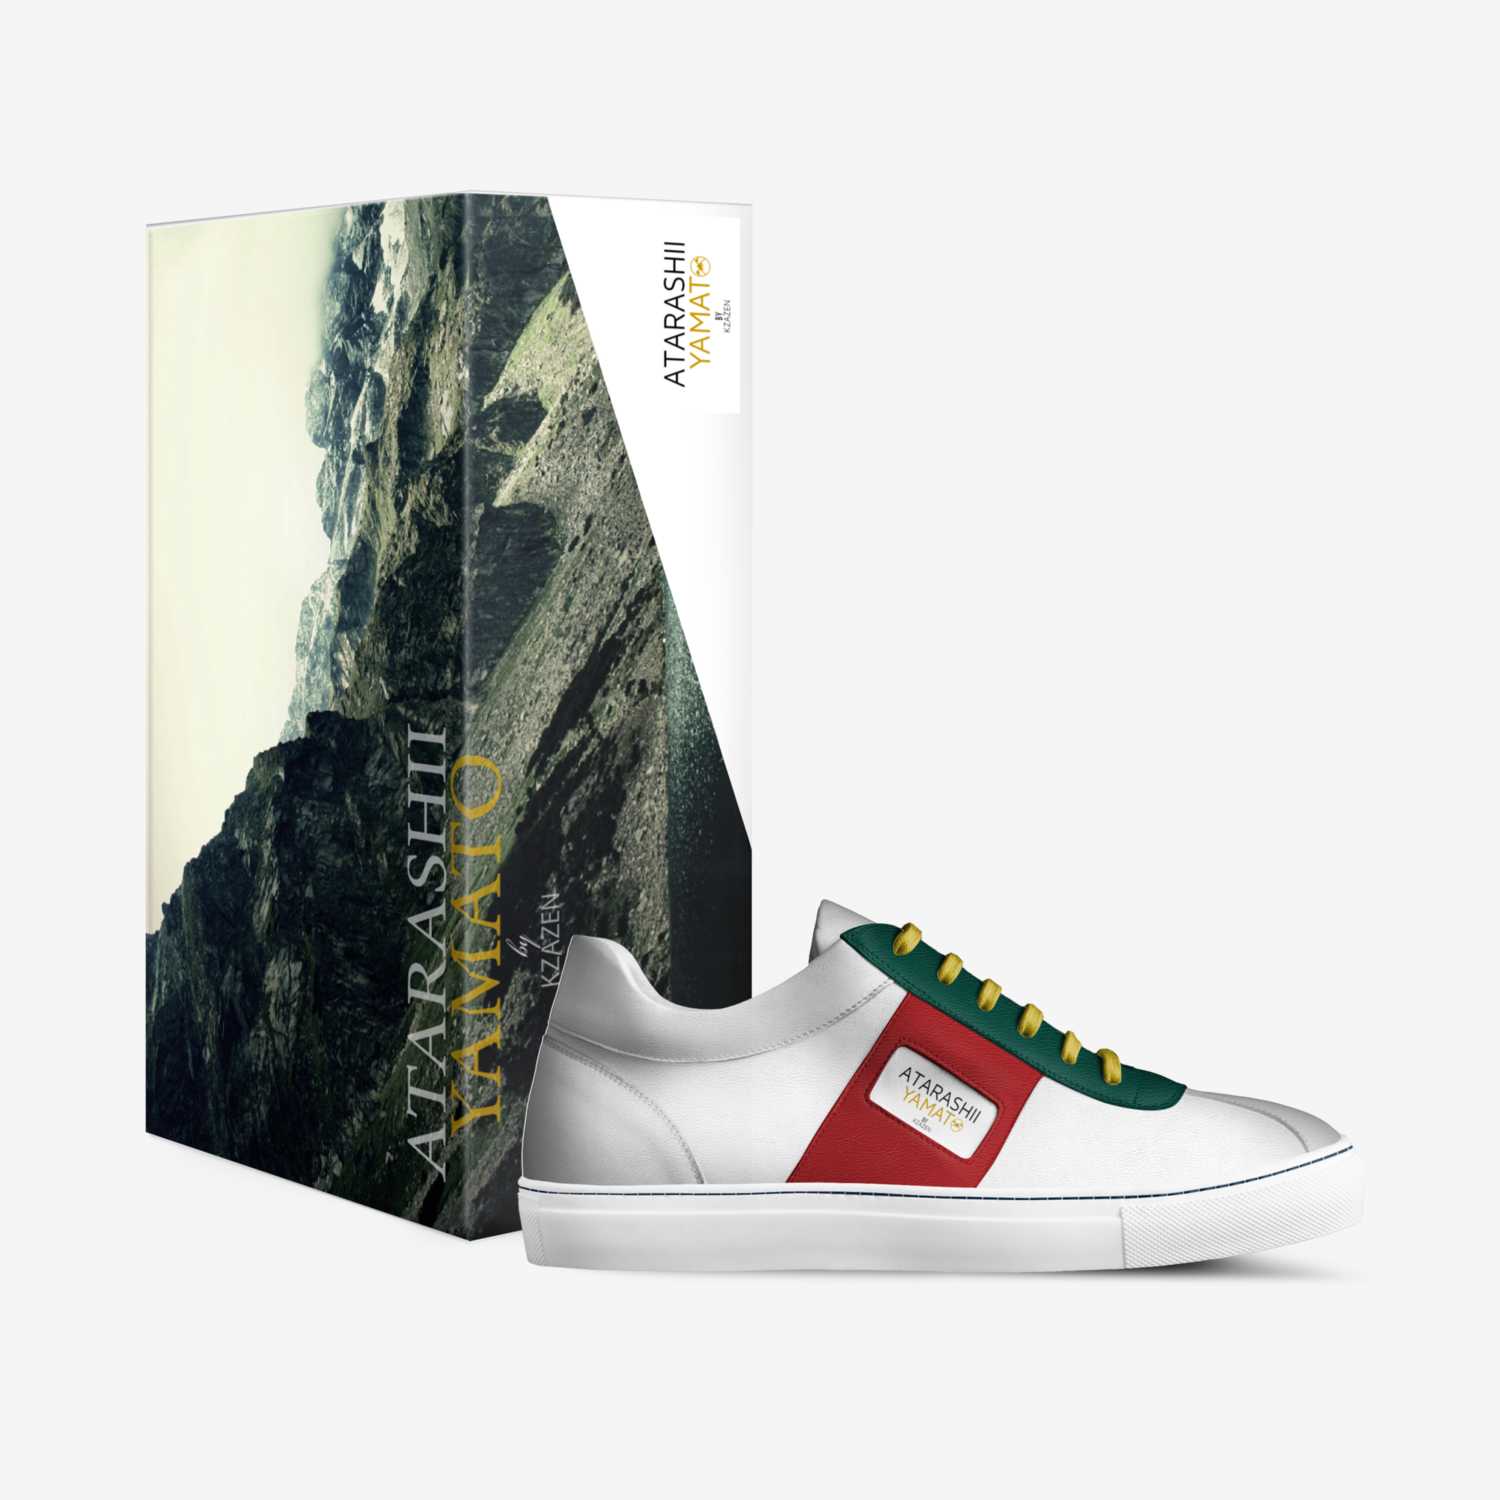 Atarashii Yamato custom made in Italy shoes by Kendrick Ng | Box view